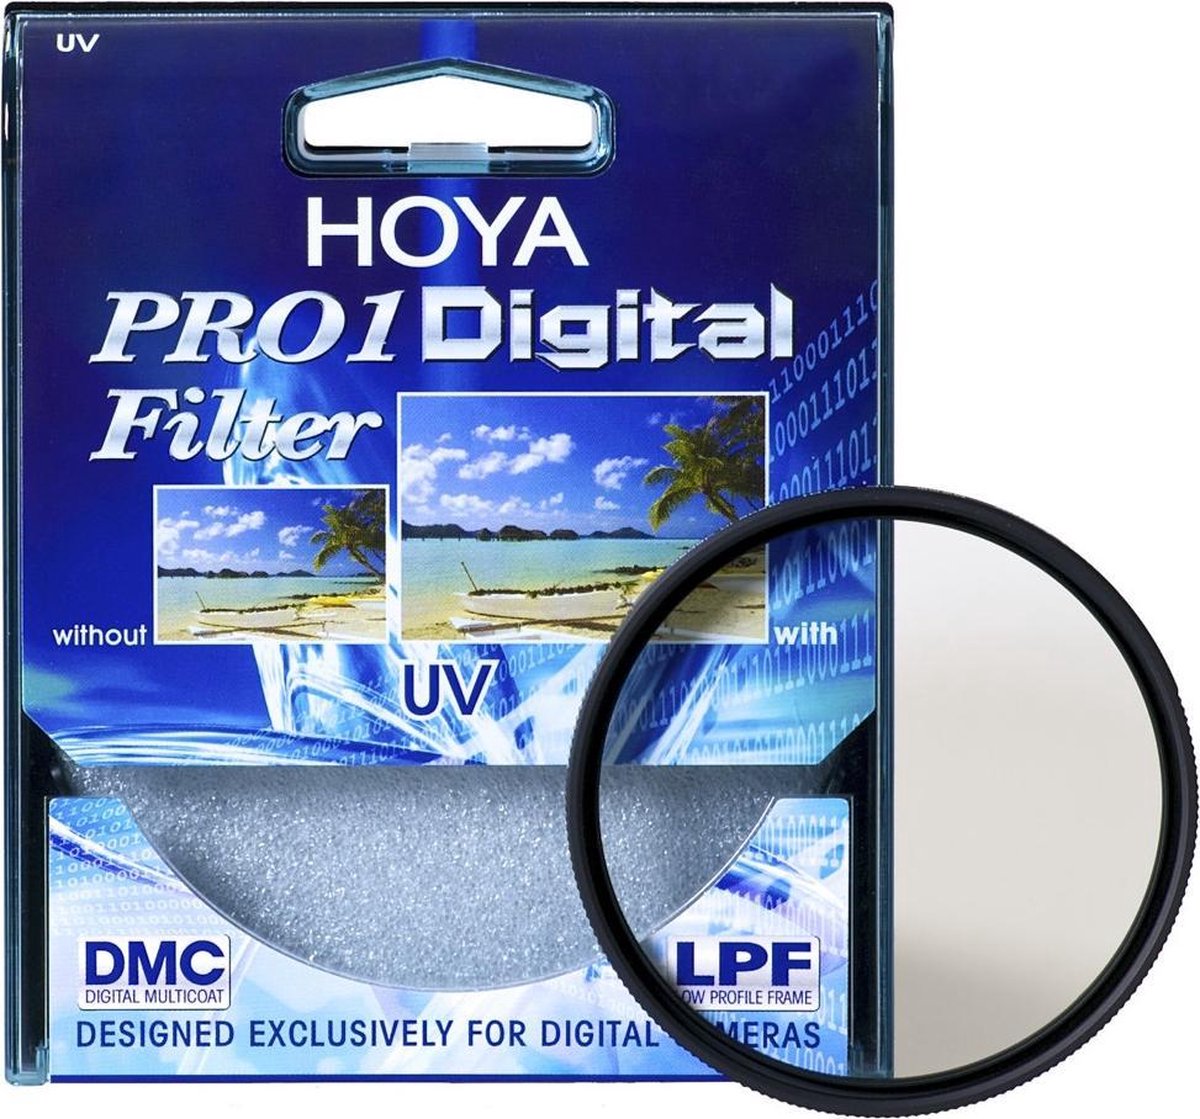 Hoya UV Filter 62mm Pro 1 Digital Filter